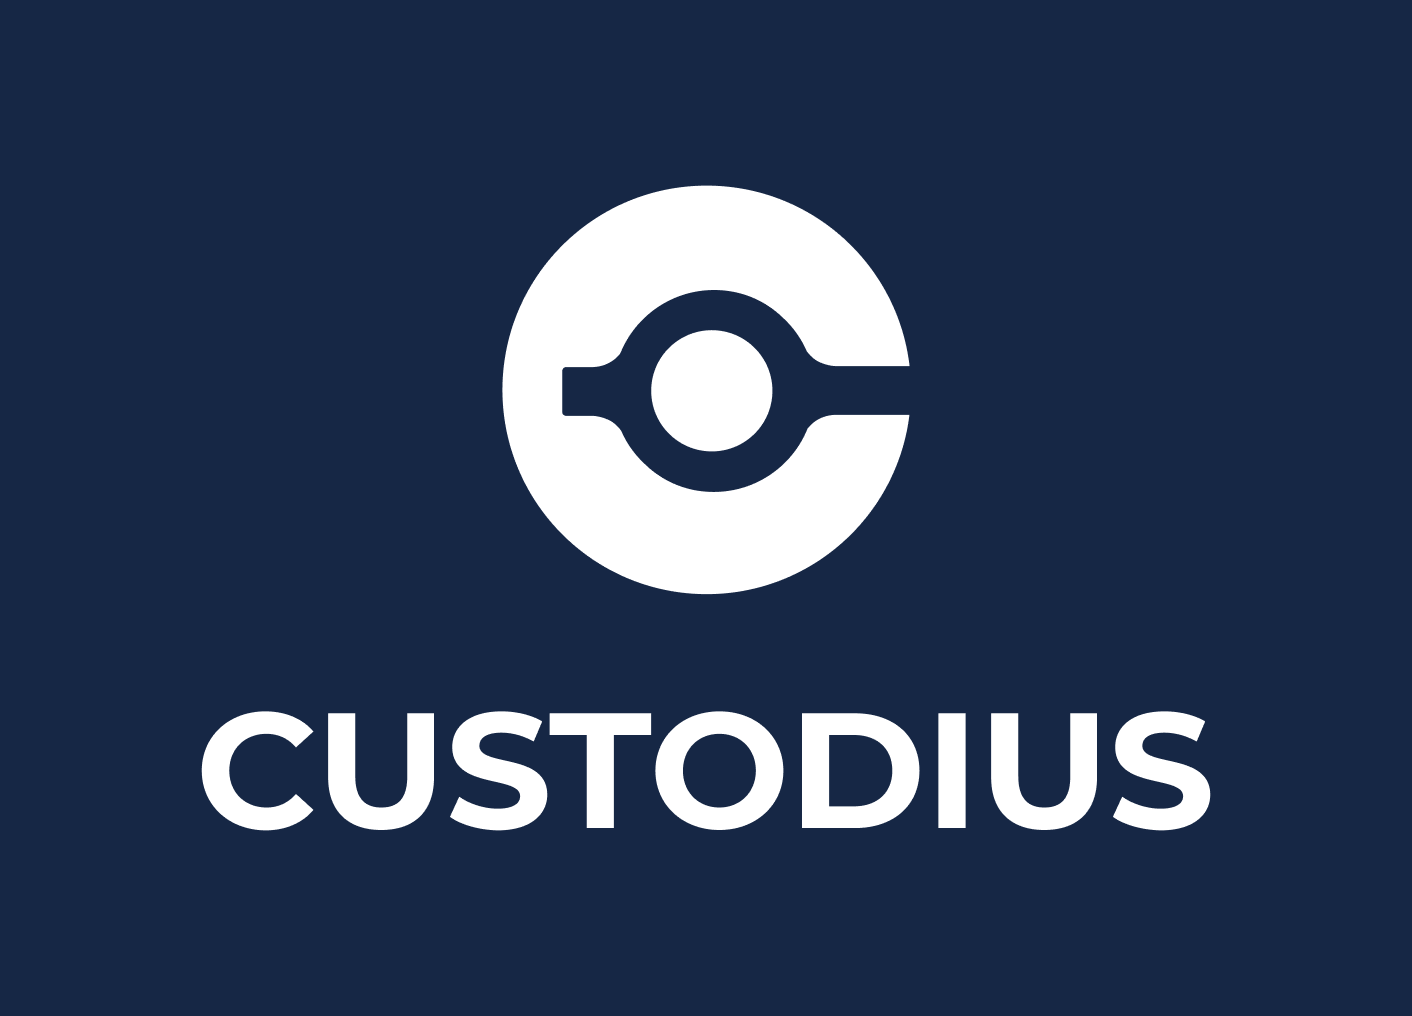 Custodius